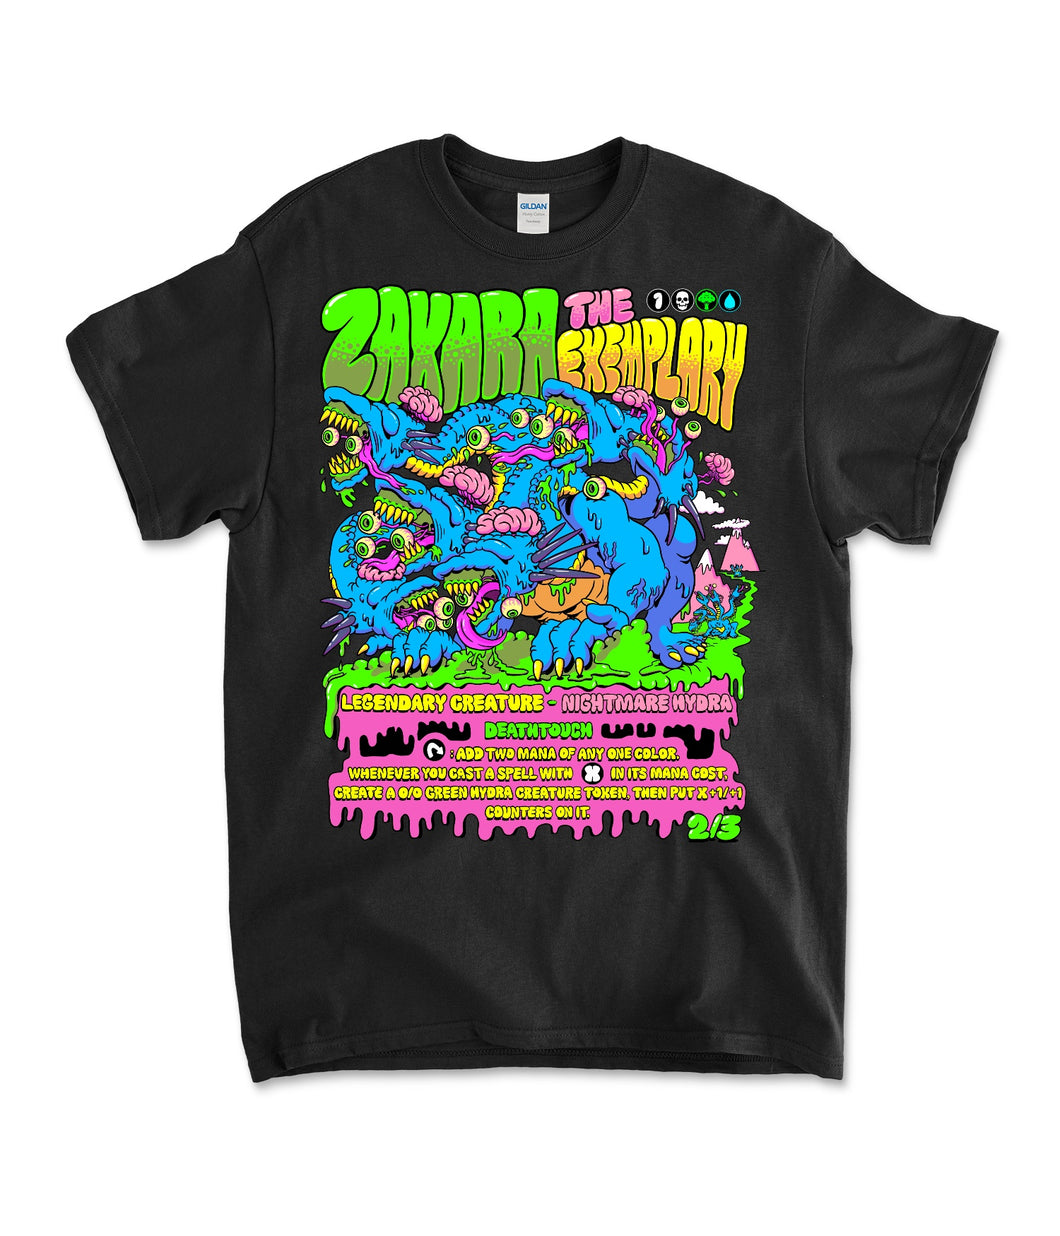 Zaxara The Exemplary T-Shirt